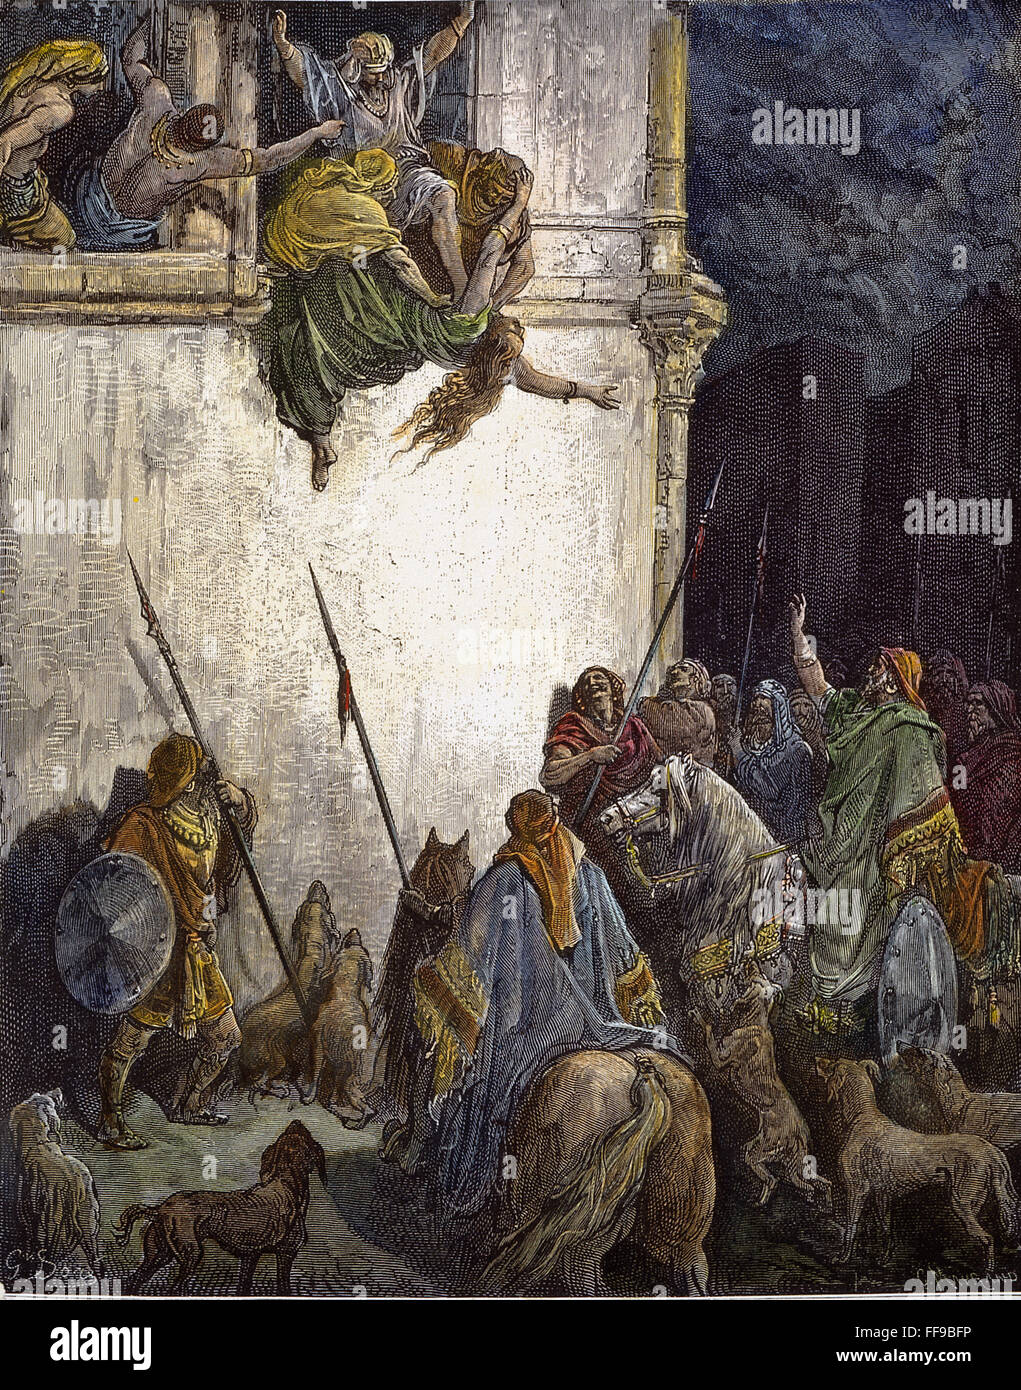 Mort de Jézabel. /Nla Mort de Jézabel (II Rois 9:33). La gravure sur bois après Gustave DorΘ. Banque D'Images